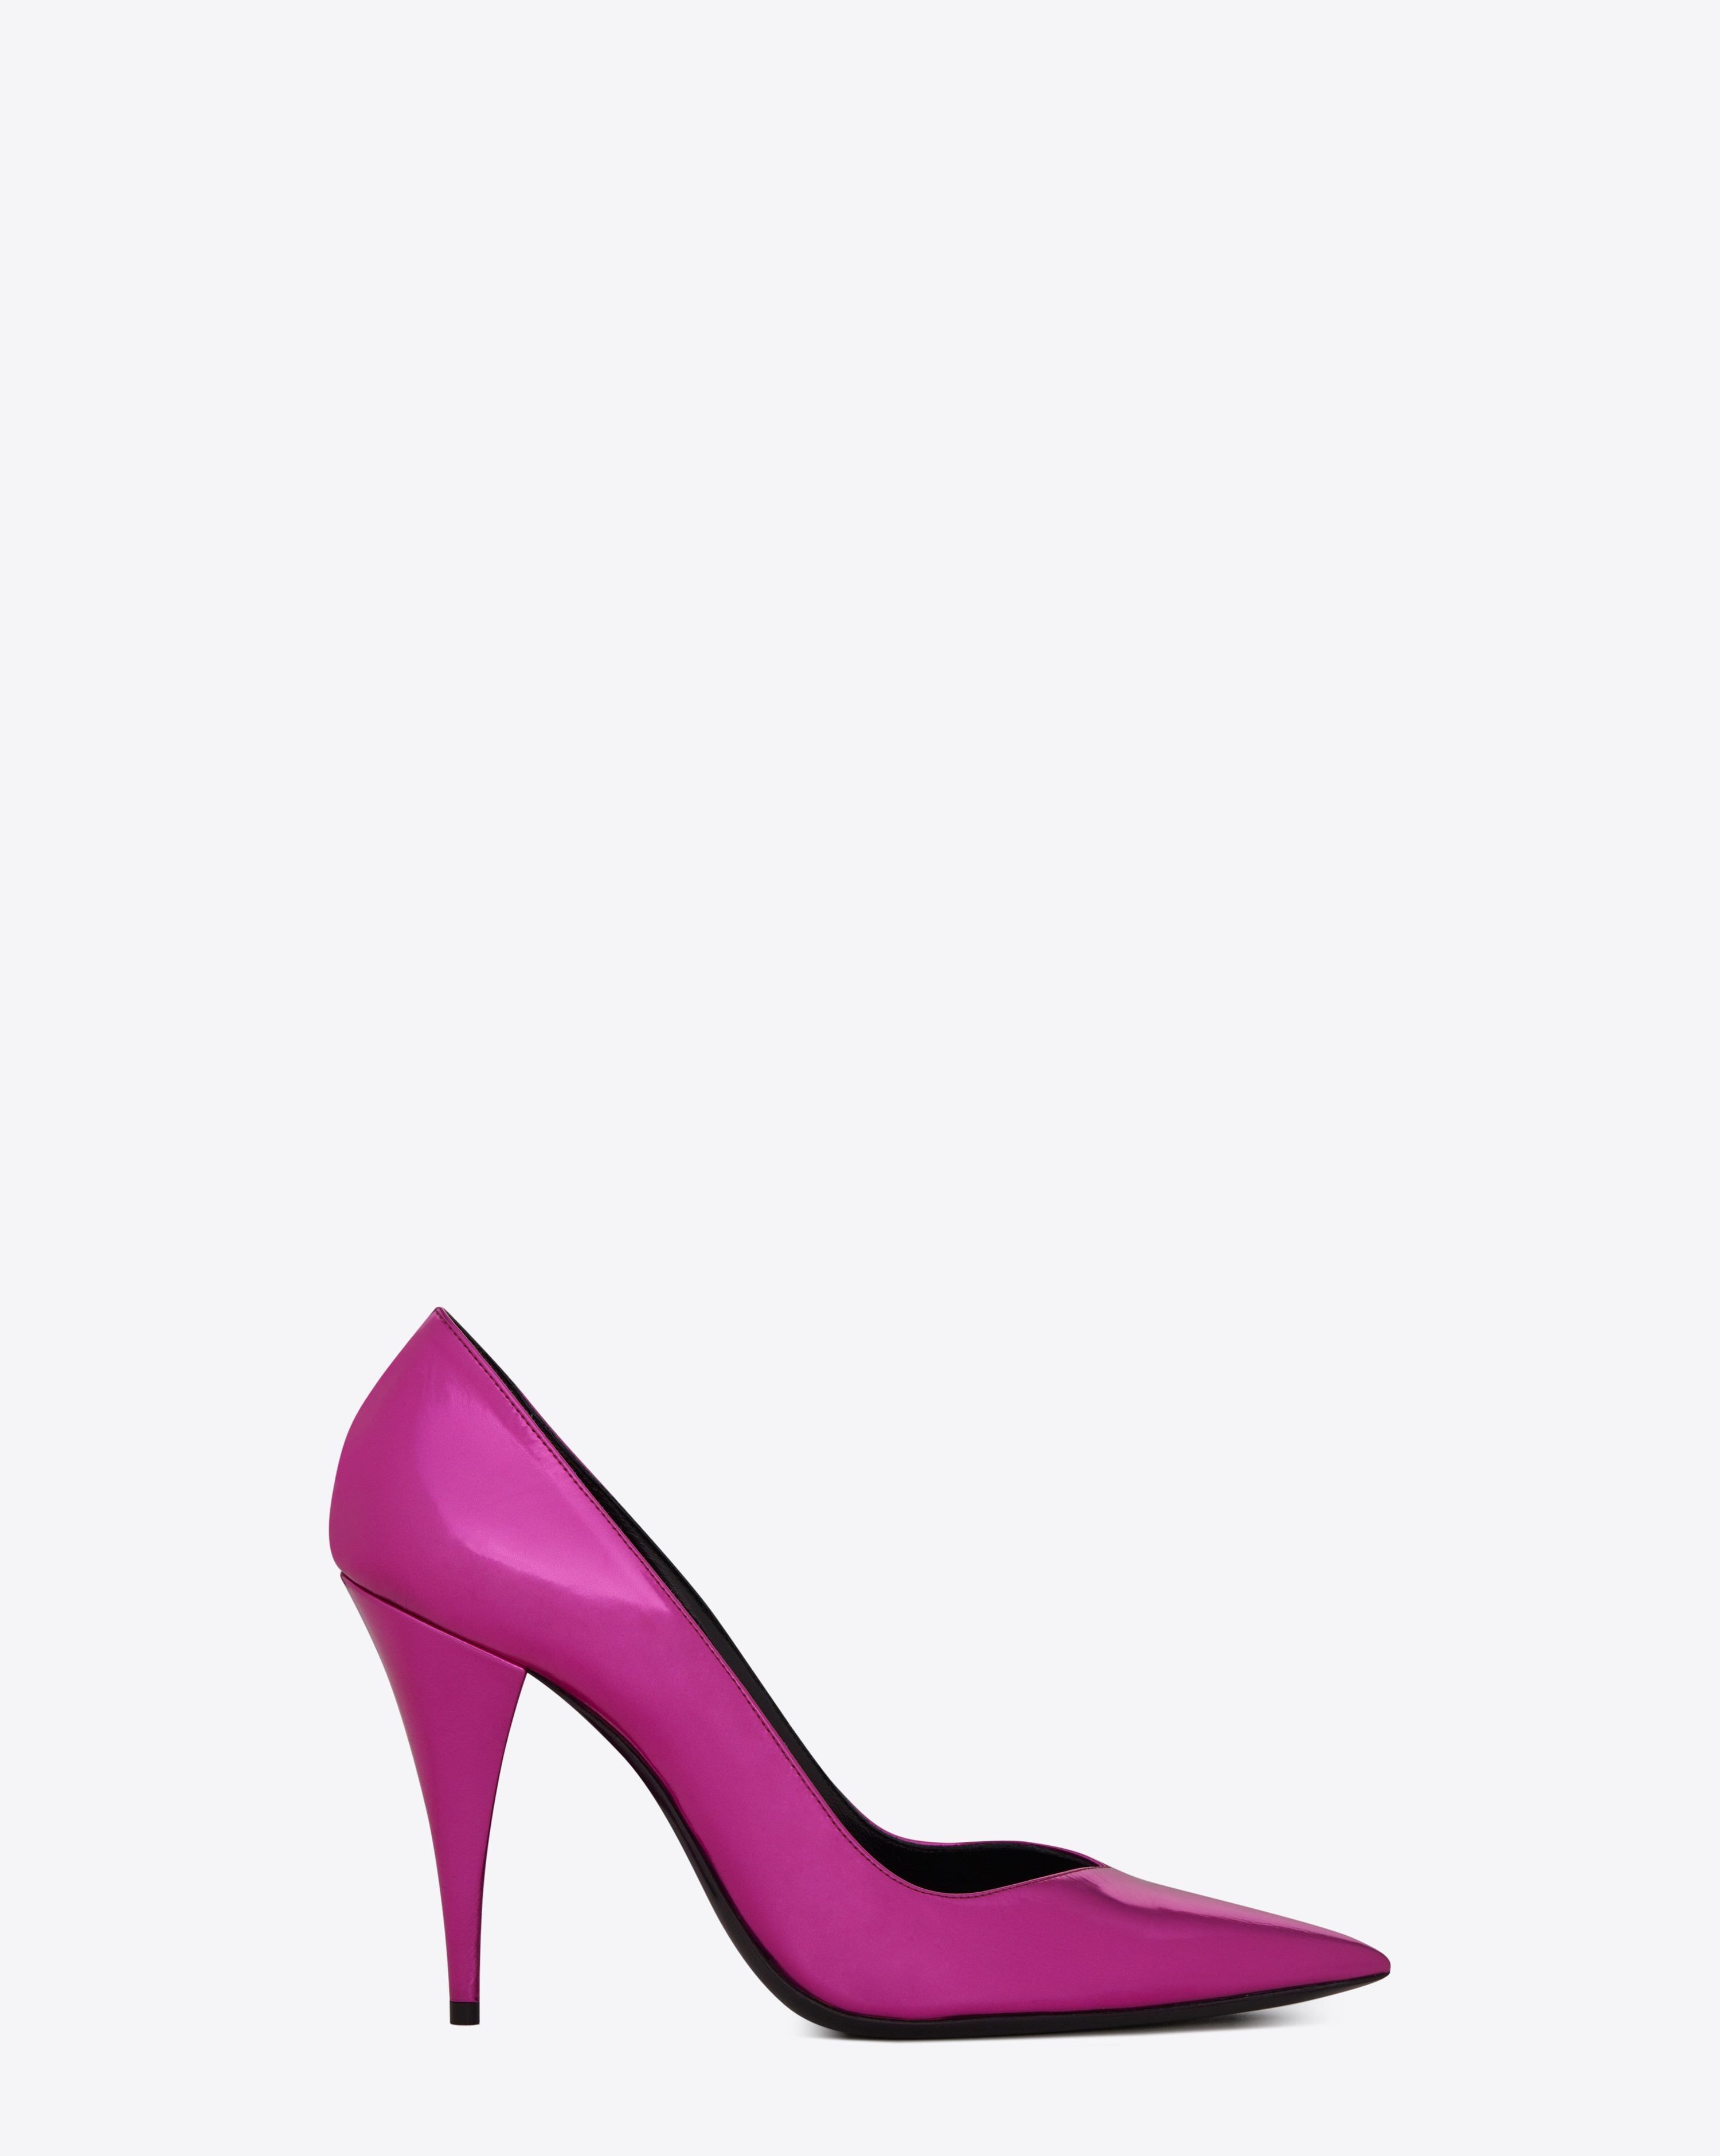 ysl pink heels